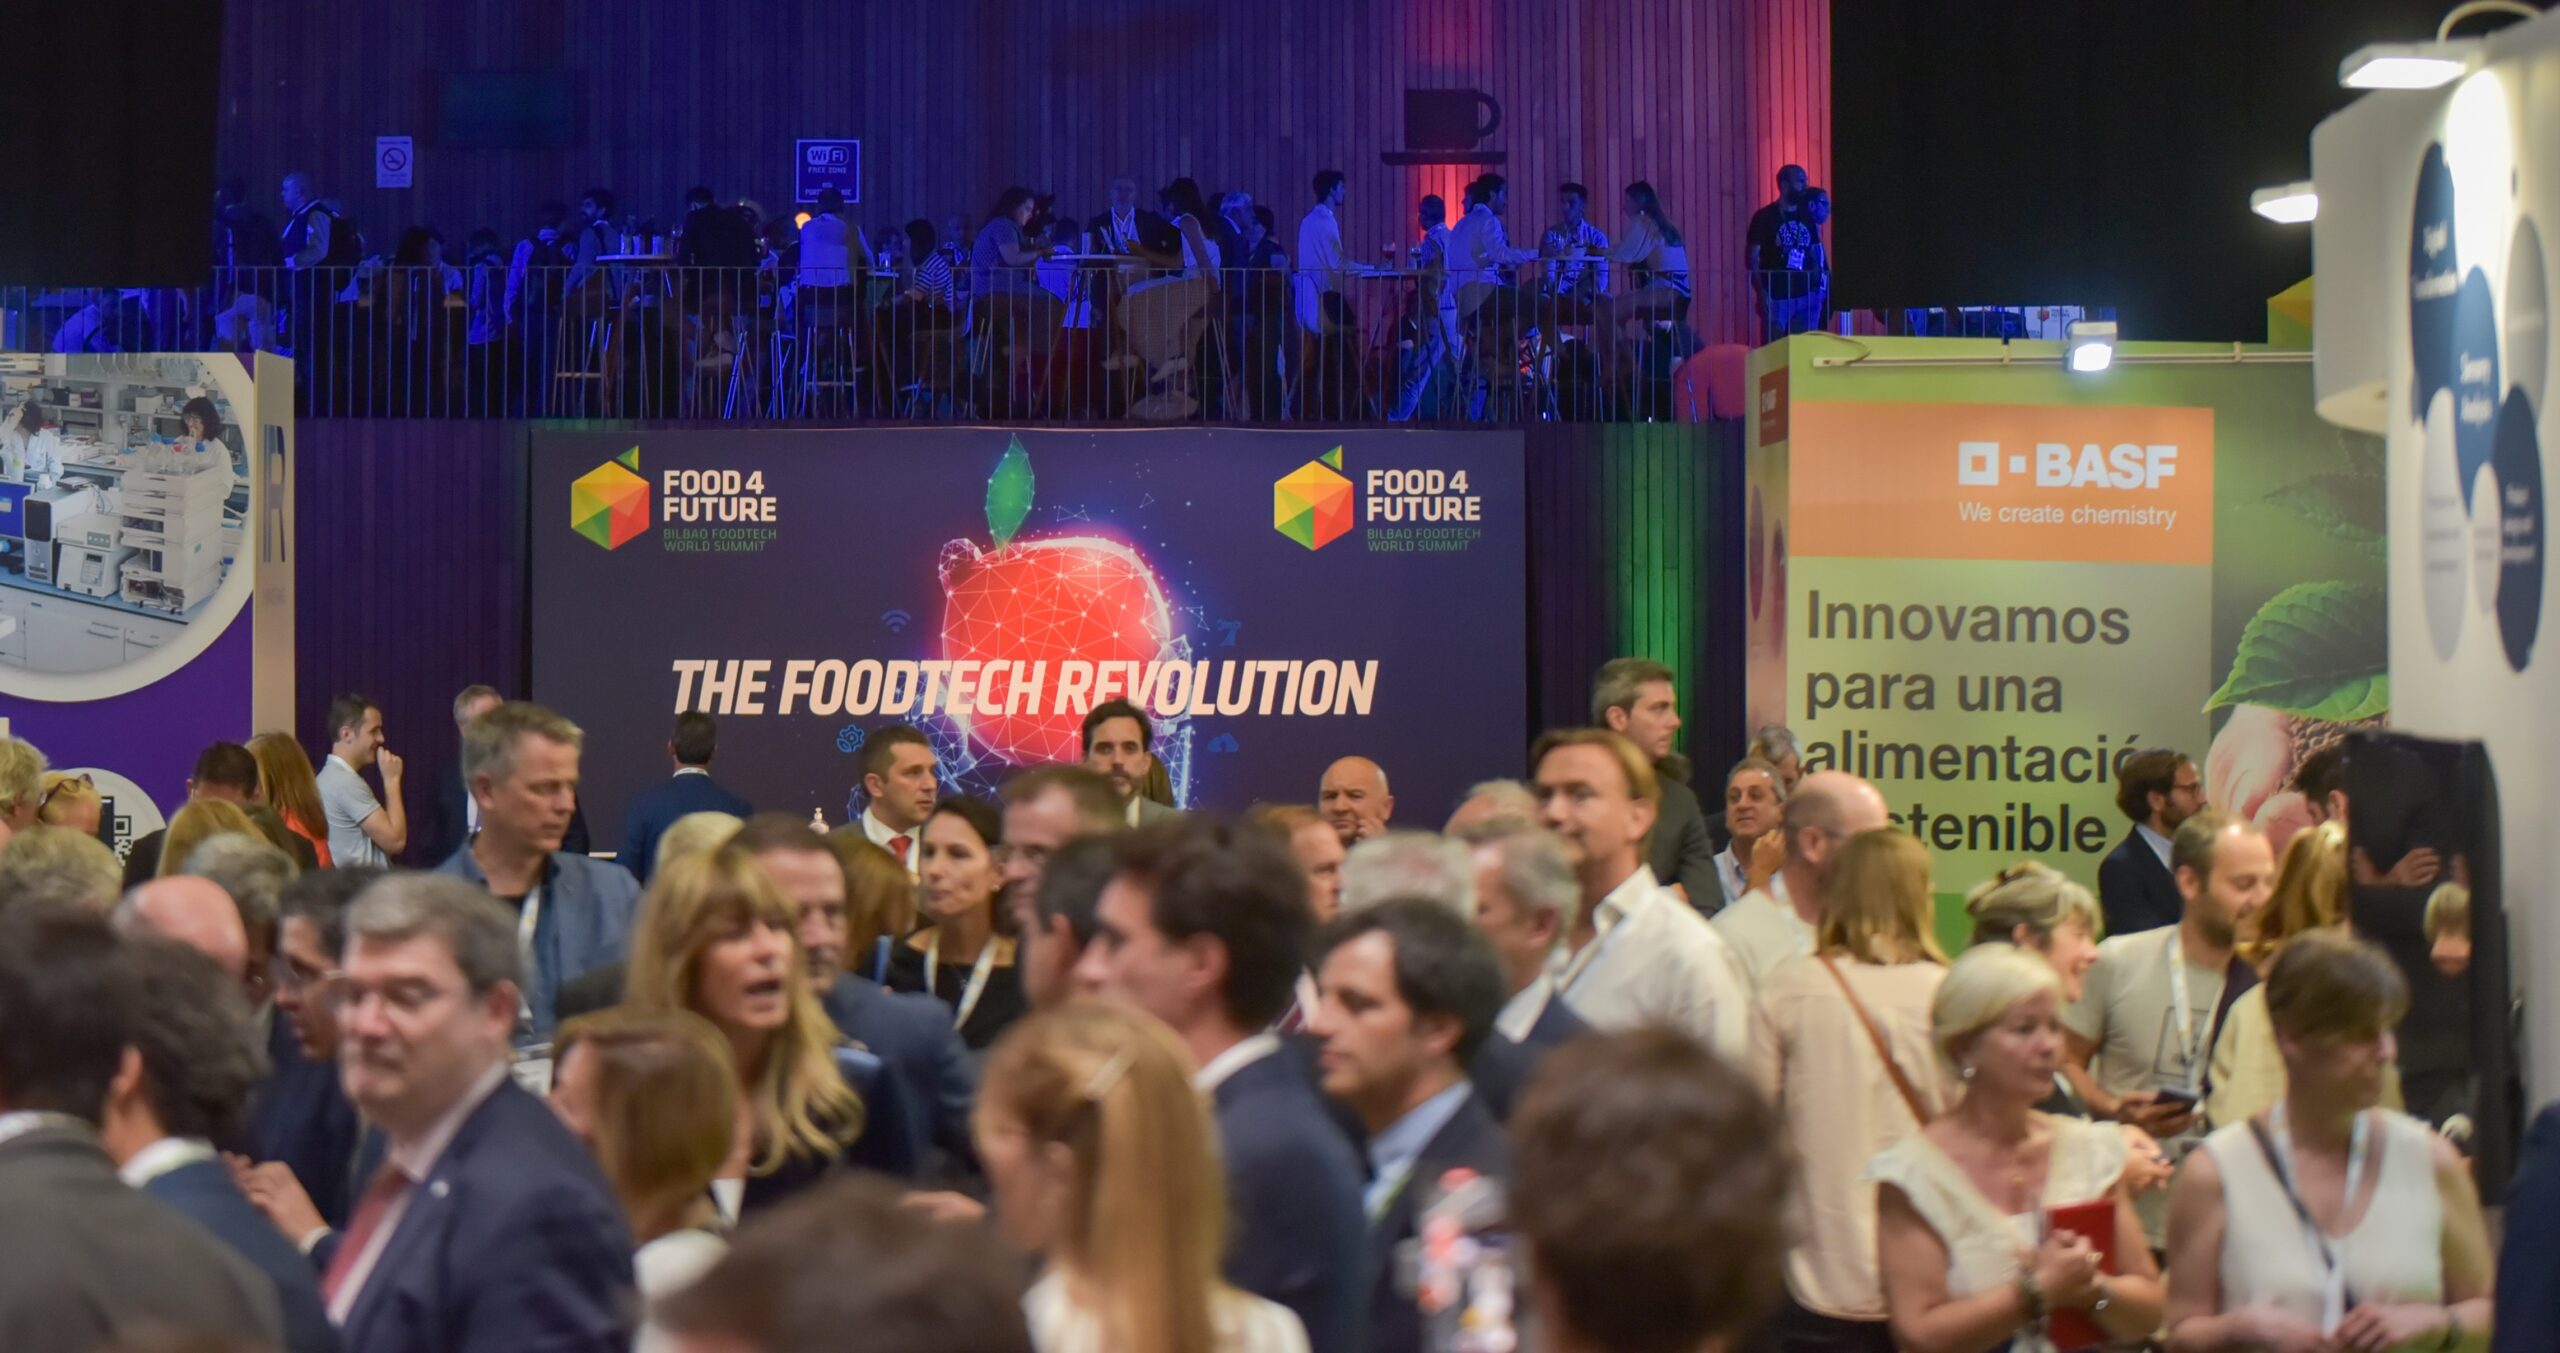 Bilbao se convierte en la capital mundial foodtech con F4F – Expo Foodtech, que deja un impacto económico de 17 millones